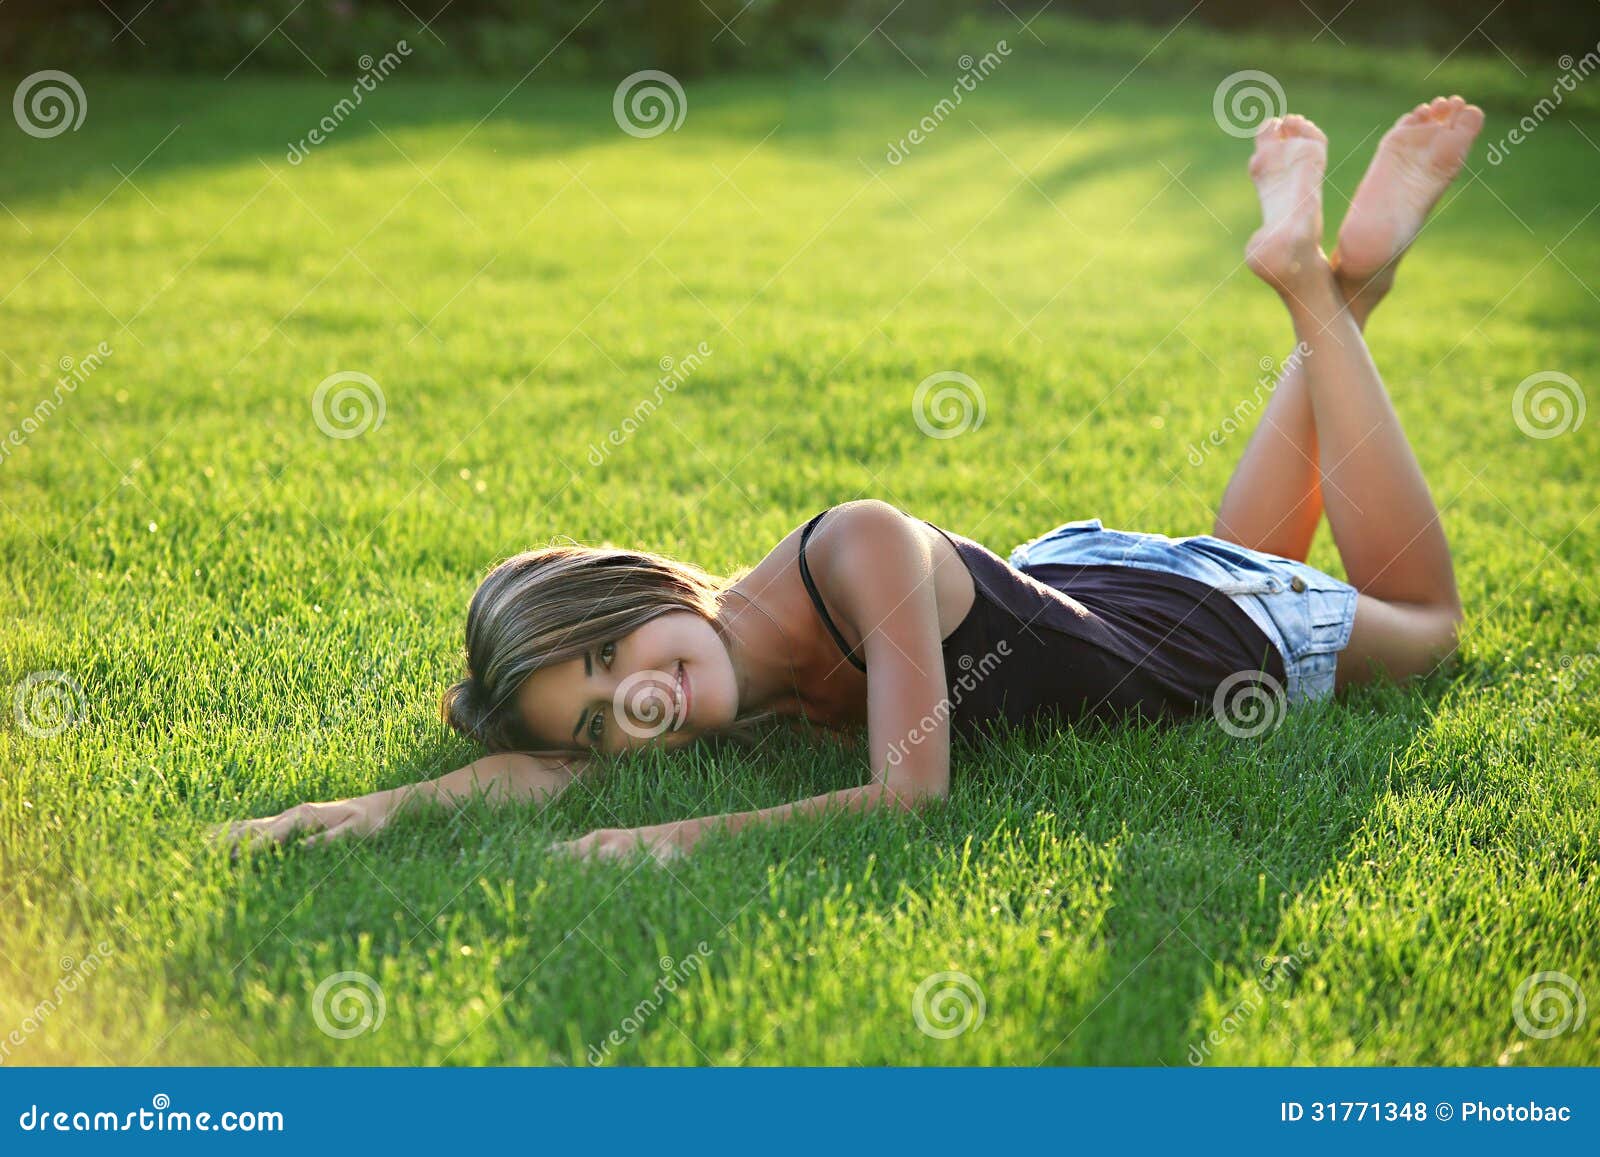 Красивые девушки лежа на животе. Девушка лежит на траве. Девушка лежит на лужайке. Девушки лежат на траве босиком. Подросток лежит на траве.